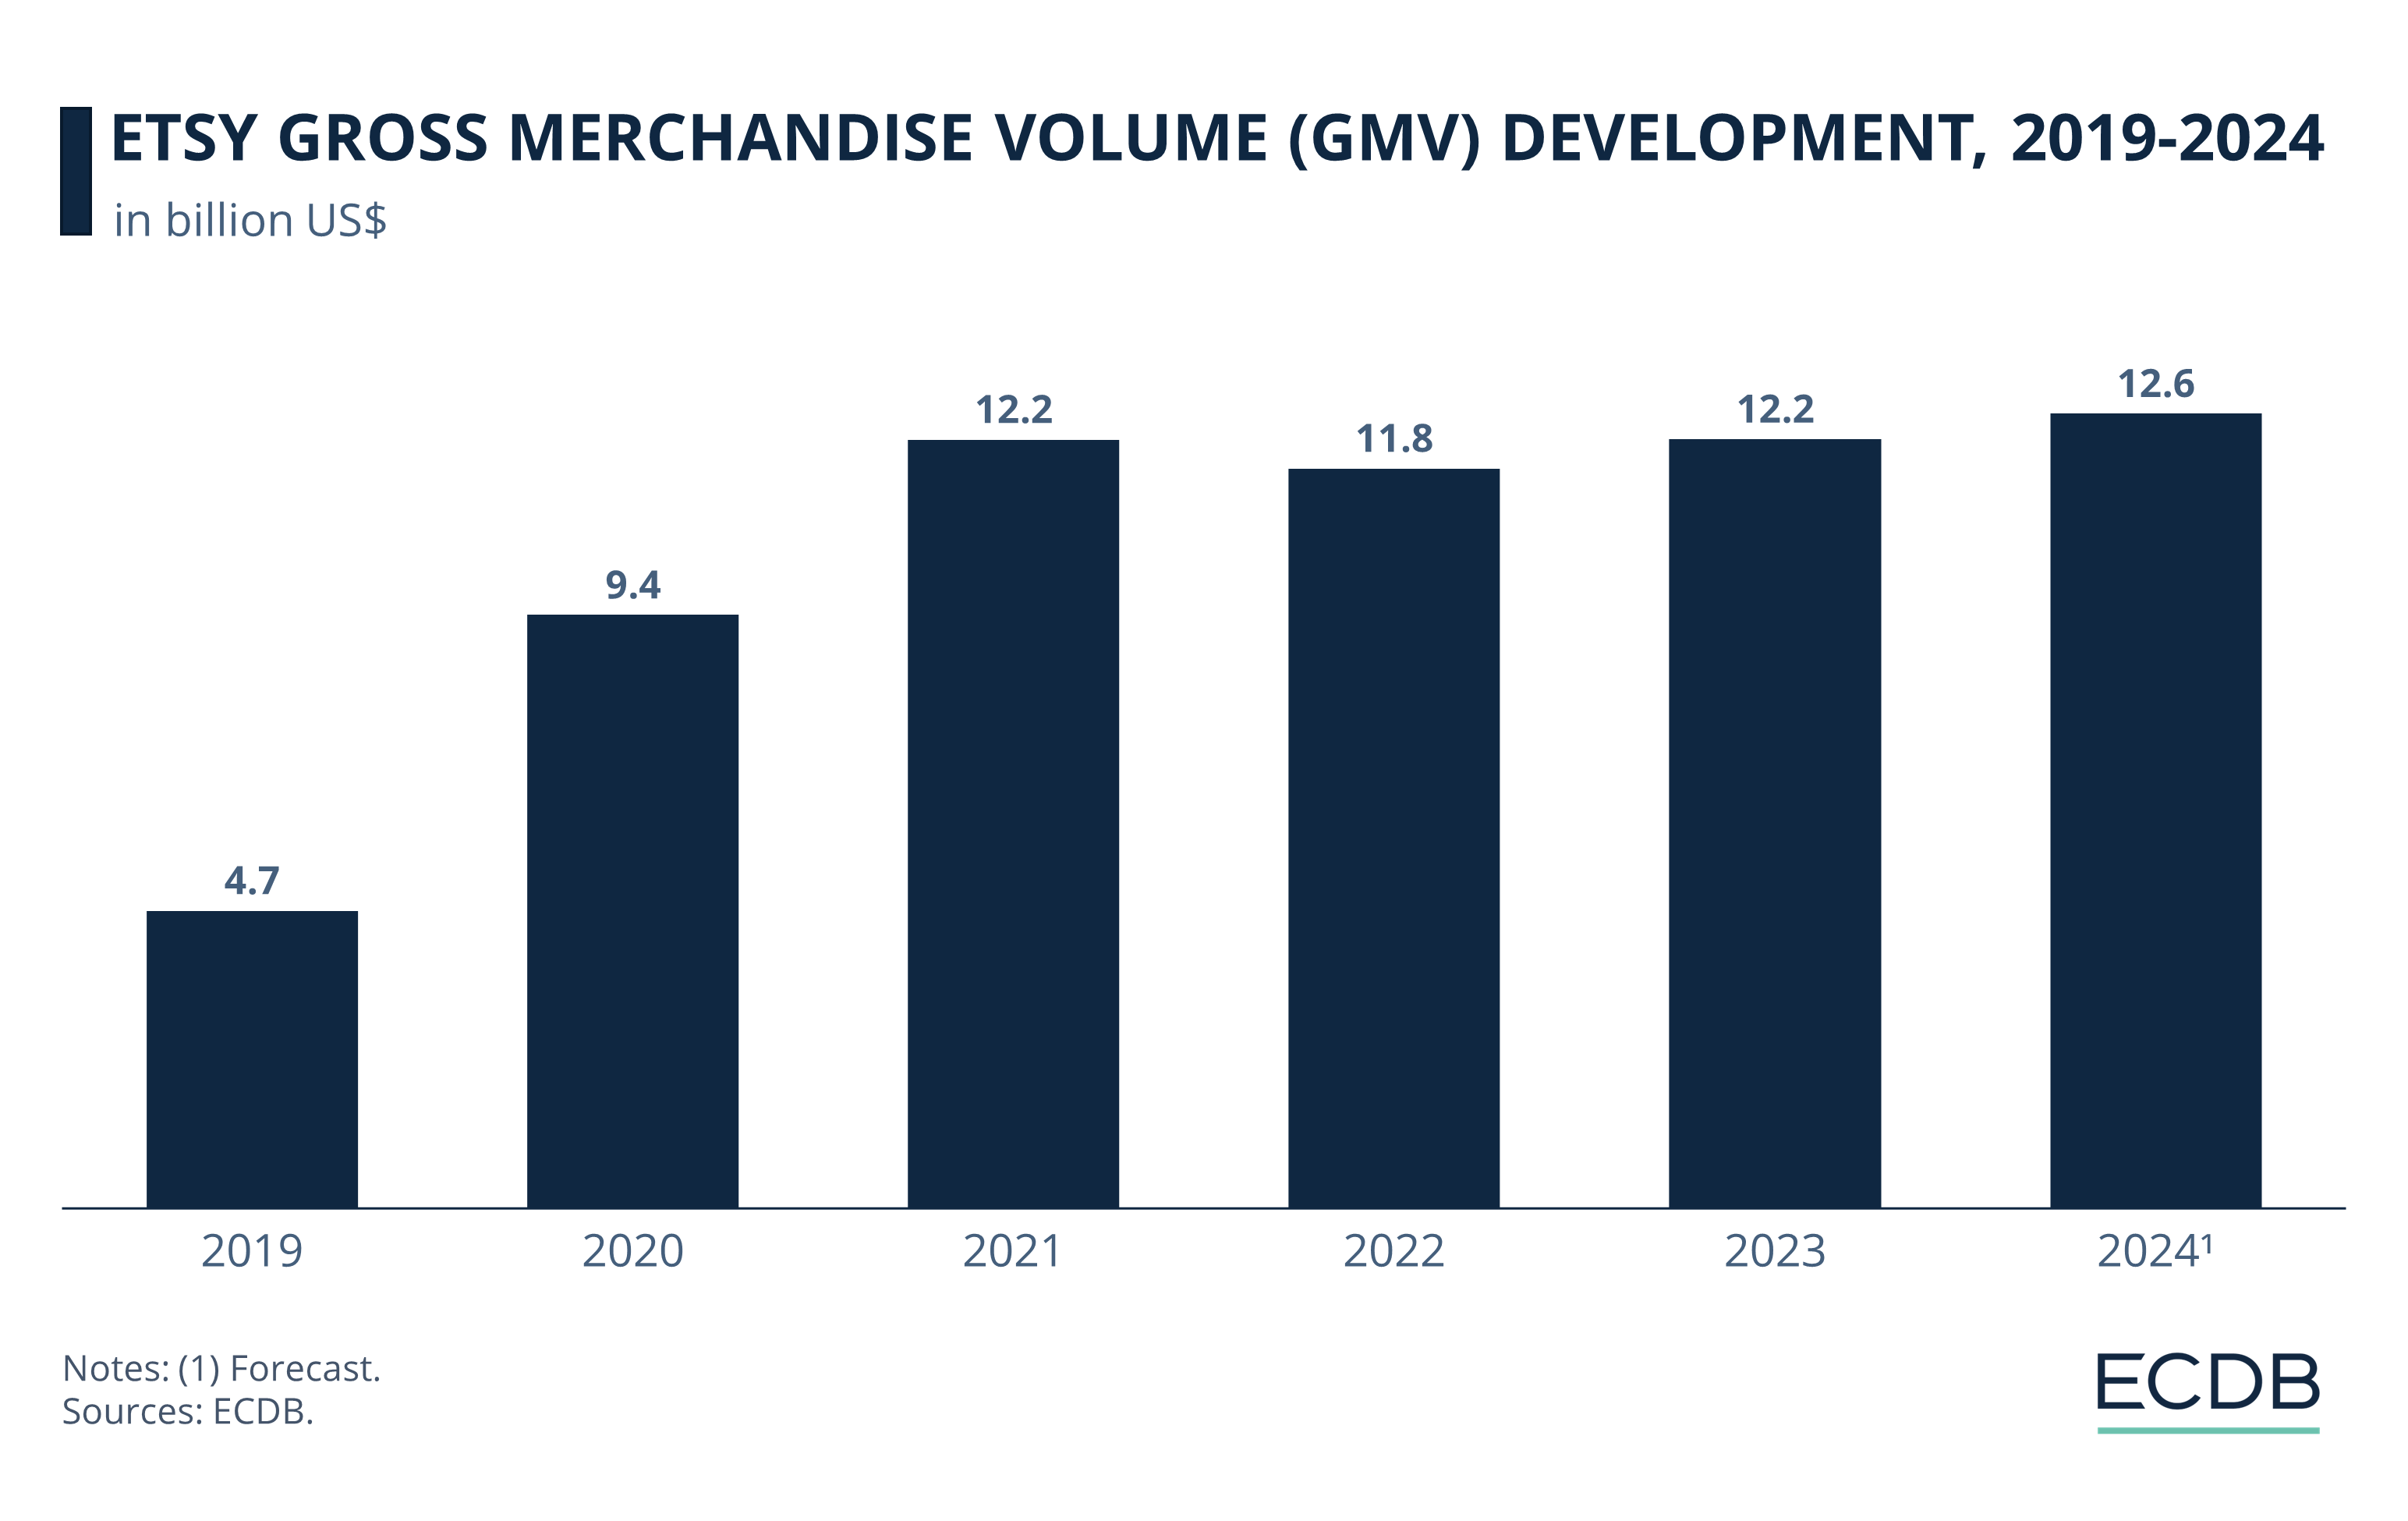 Etsy Gross Merchandise Volume Development, 2019-2024